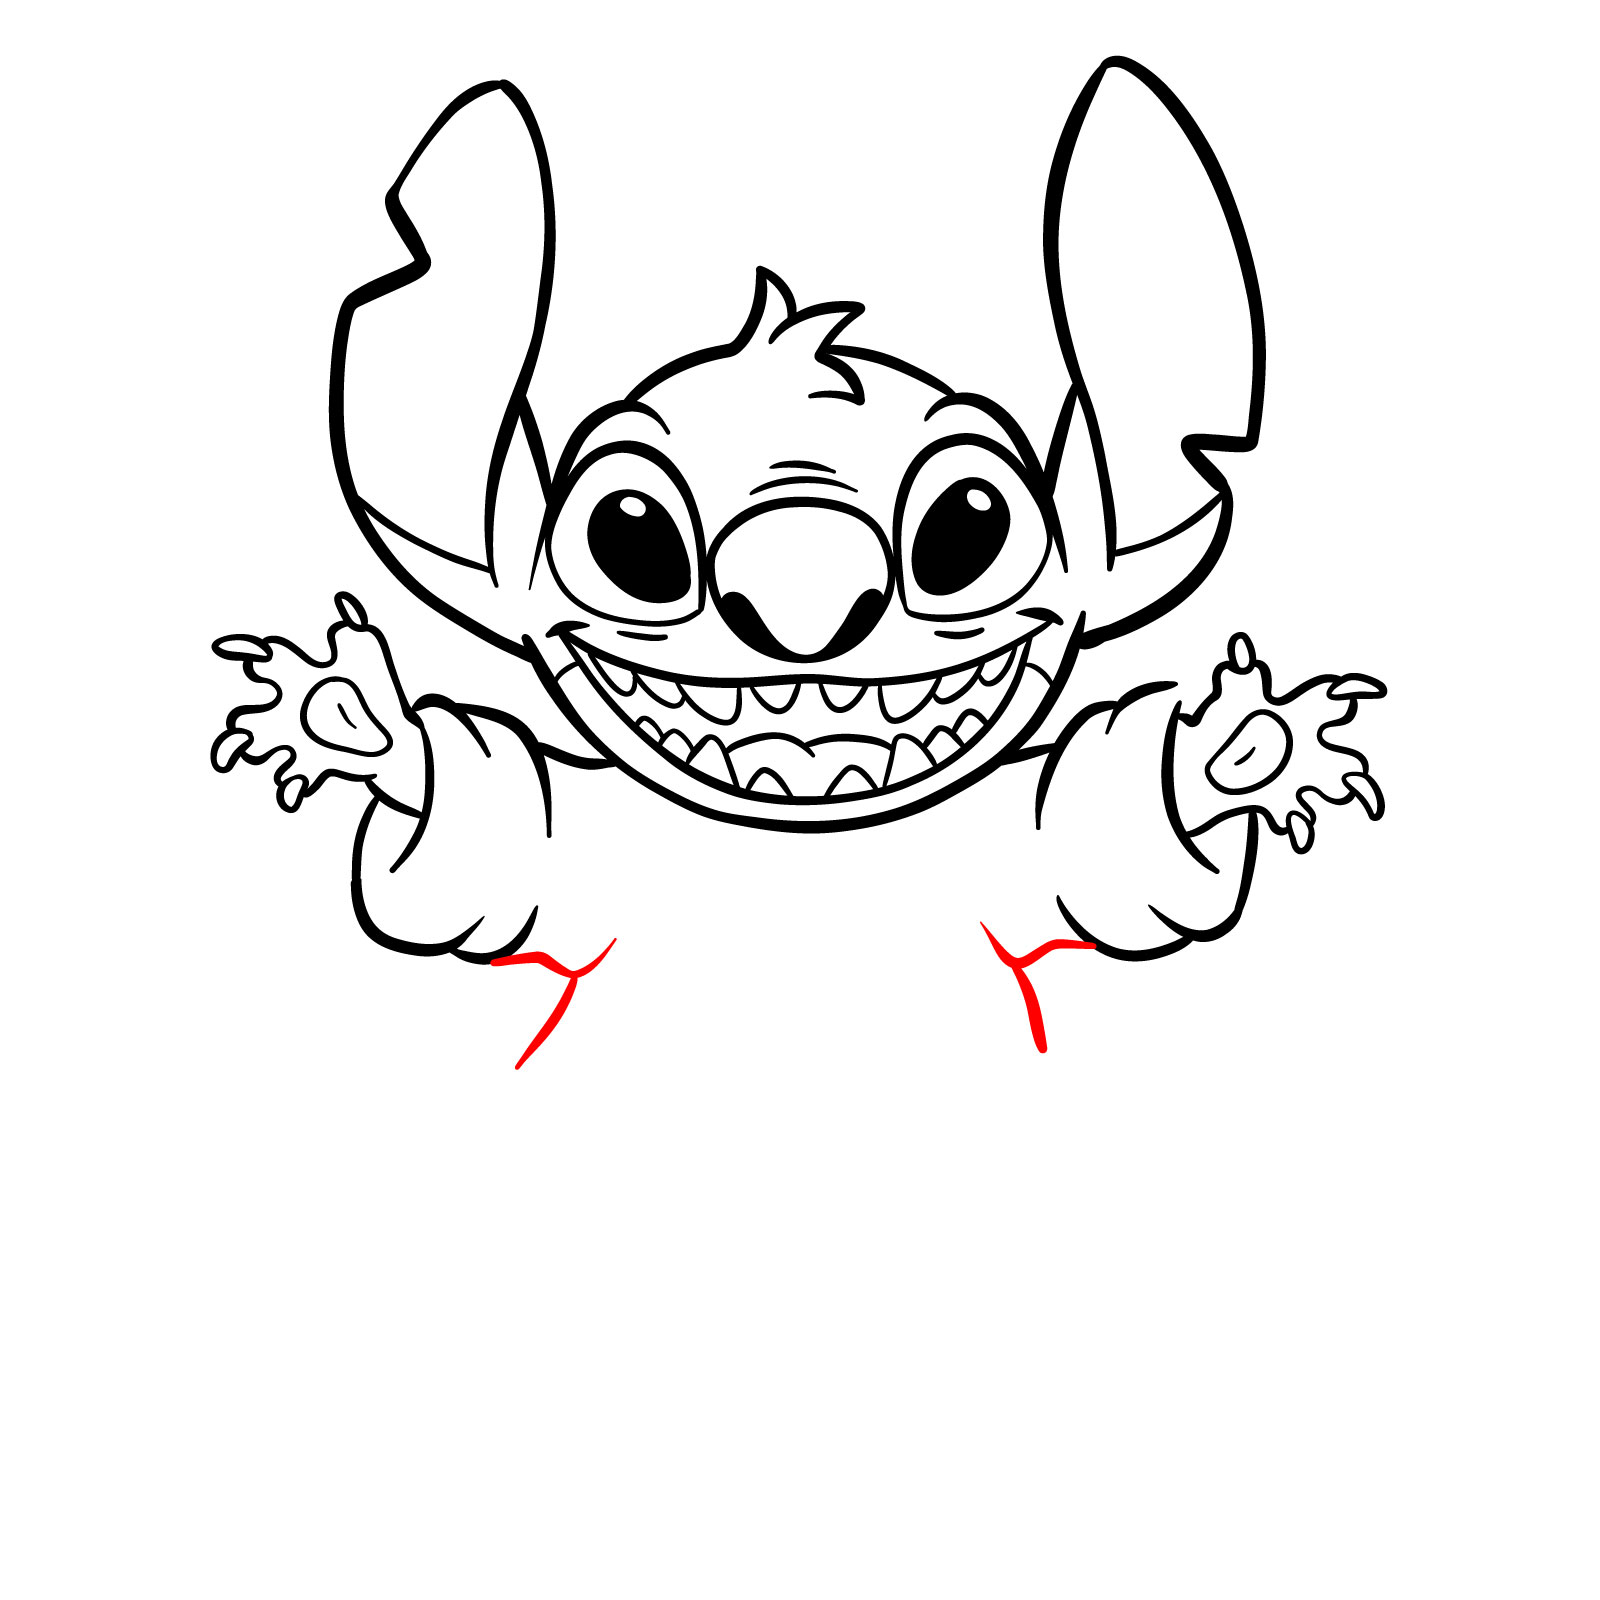 How to Draw Halloween Stitch with a jack-o'-lantern - step 20